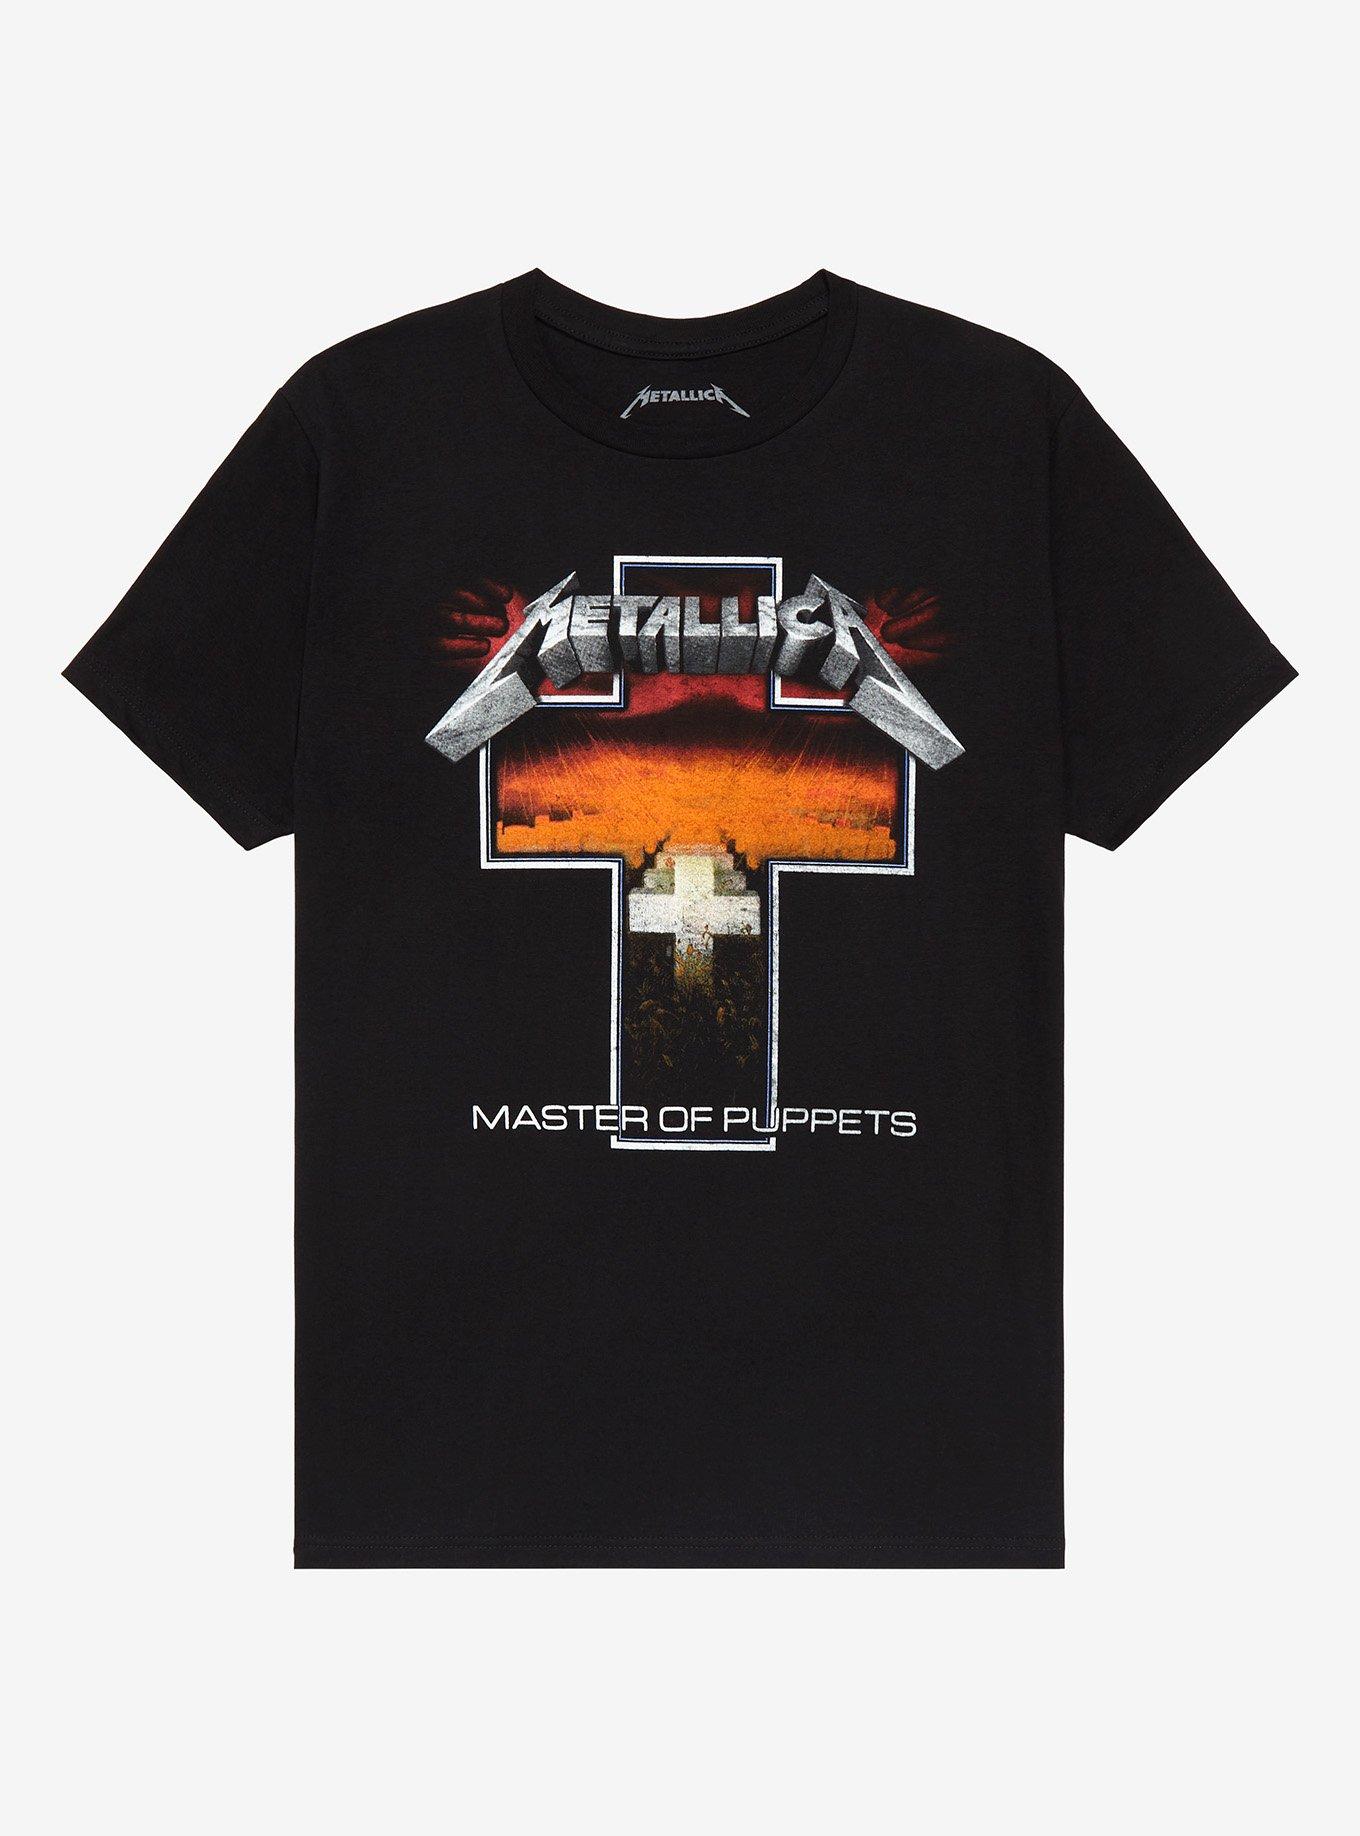 opraken Kast bedelaar OFFICIAL Metallica T-Shirts & Merchandise | Hot Topic